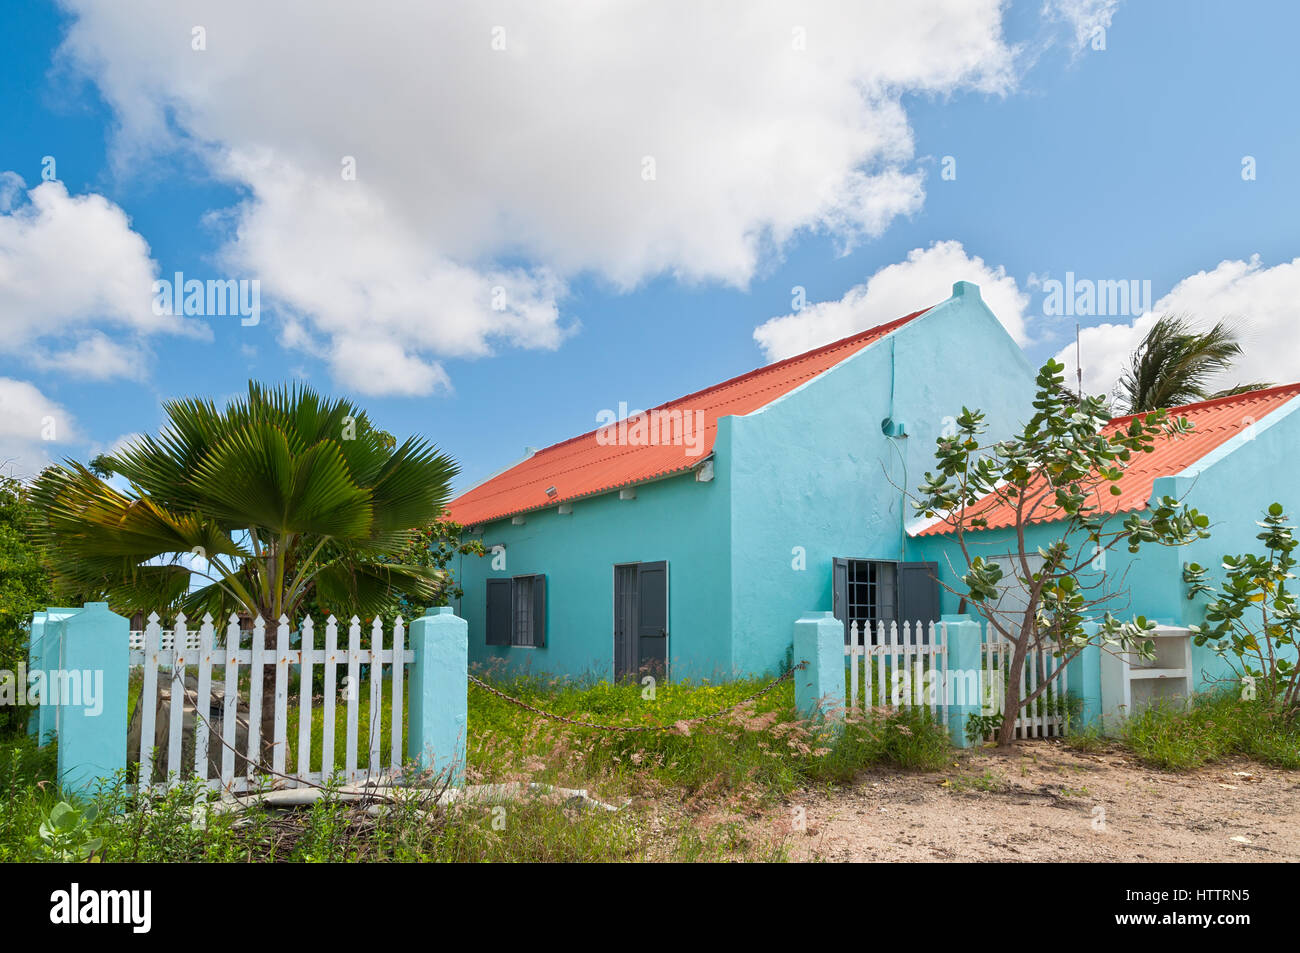 Kralendijk, Bonaire - 2 décembre, 2011 : ces maisons sur Bonaire sont une combinaison des couleurs de la Caraïbes avec l'architecture néerlandaise à Décembre 20 01 Banque D'Images